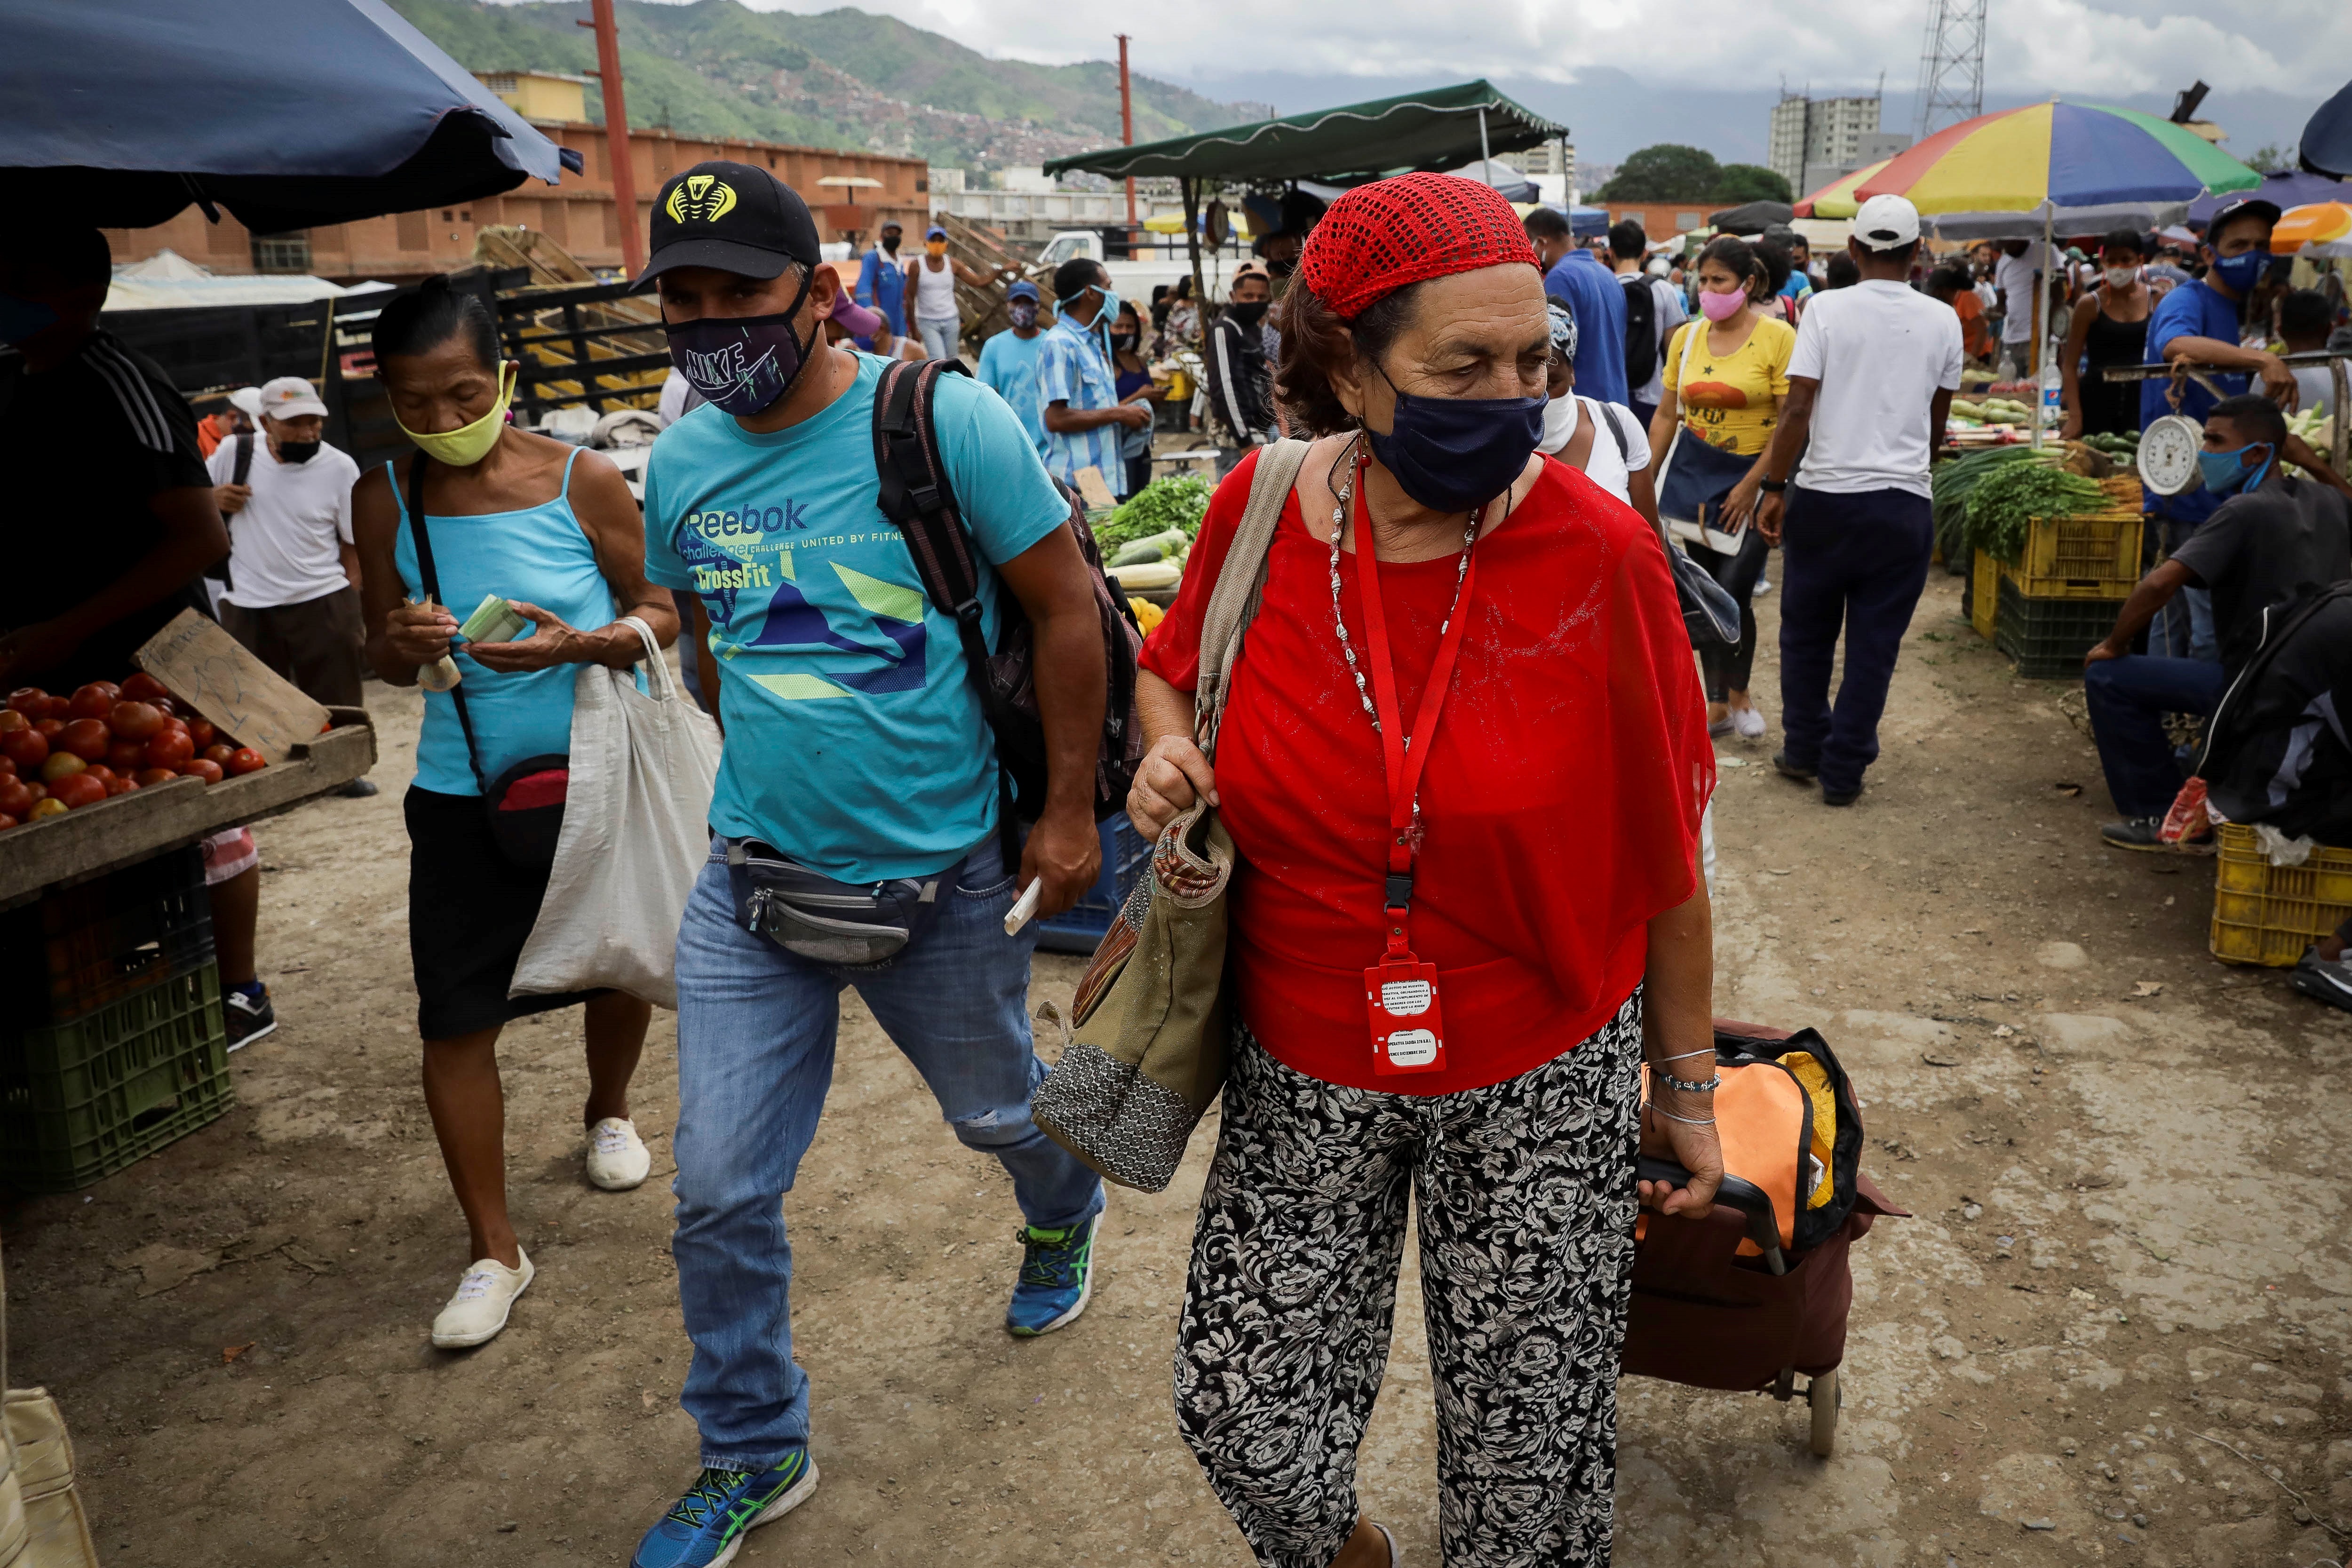 Venezuela se acercó a los 500 fallecidos por Covid-19, según cifras del régimen chavista